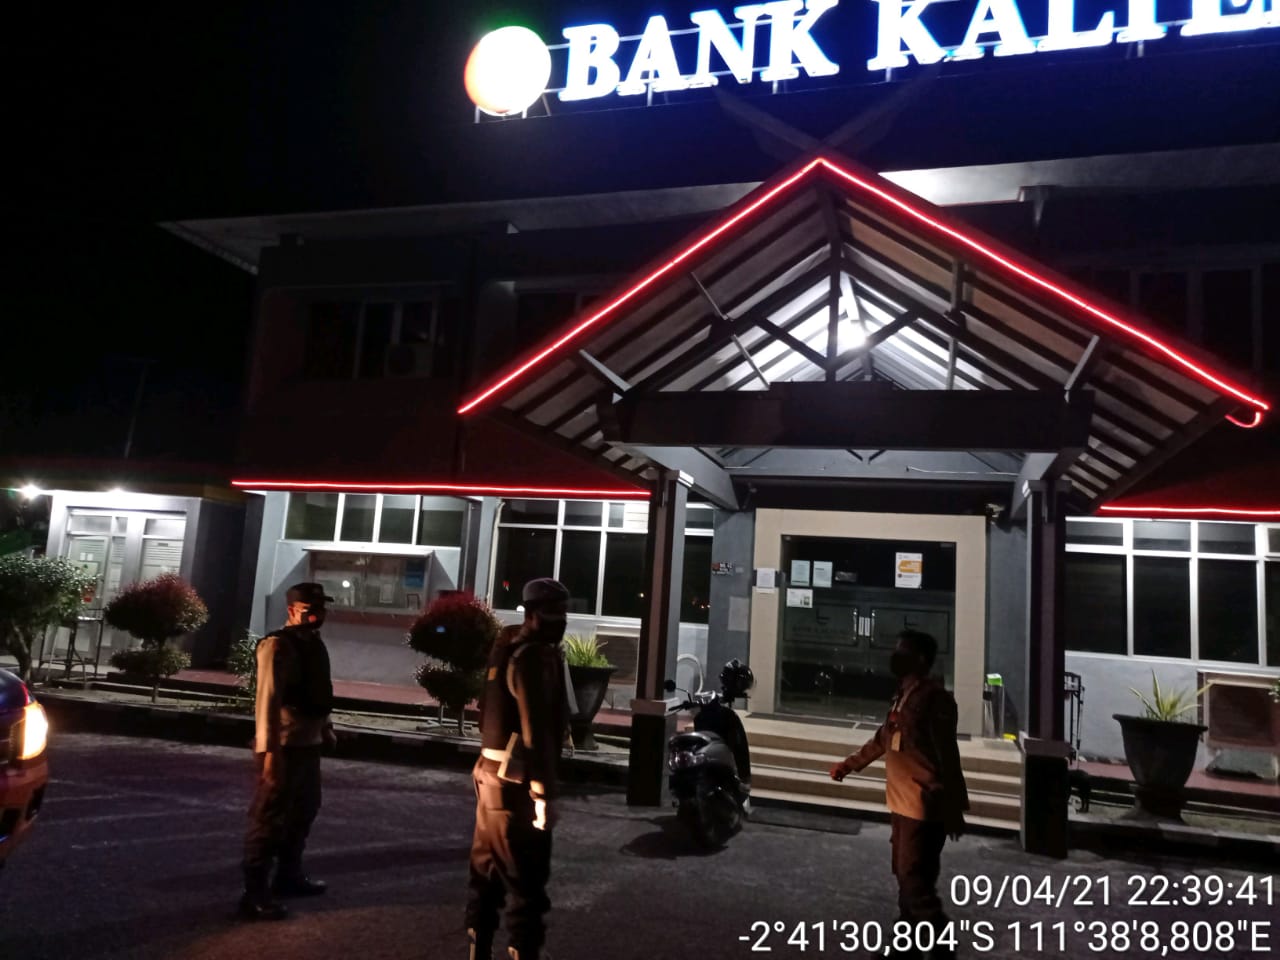 Patroli Malam Polsek Arsel Sambangi Bank Kalteng